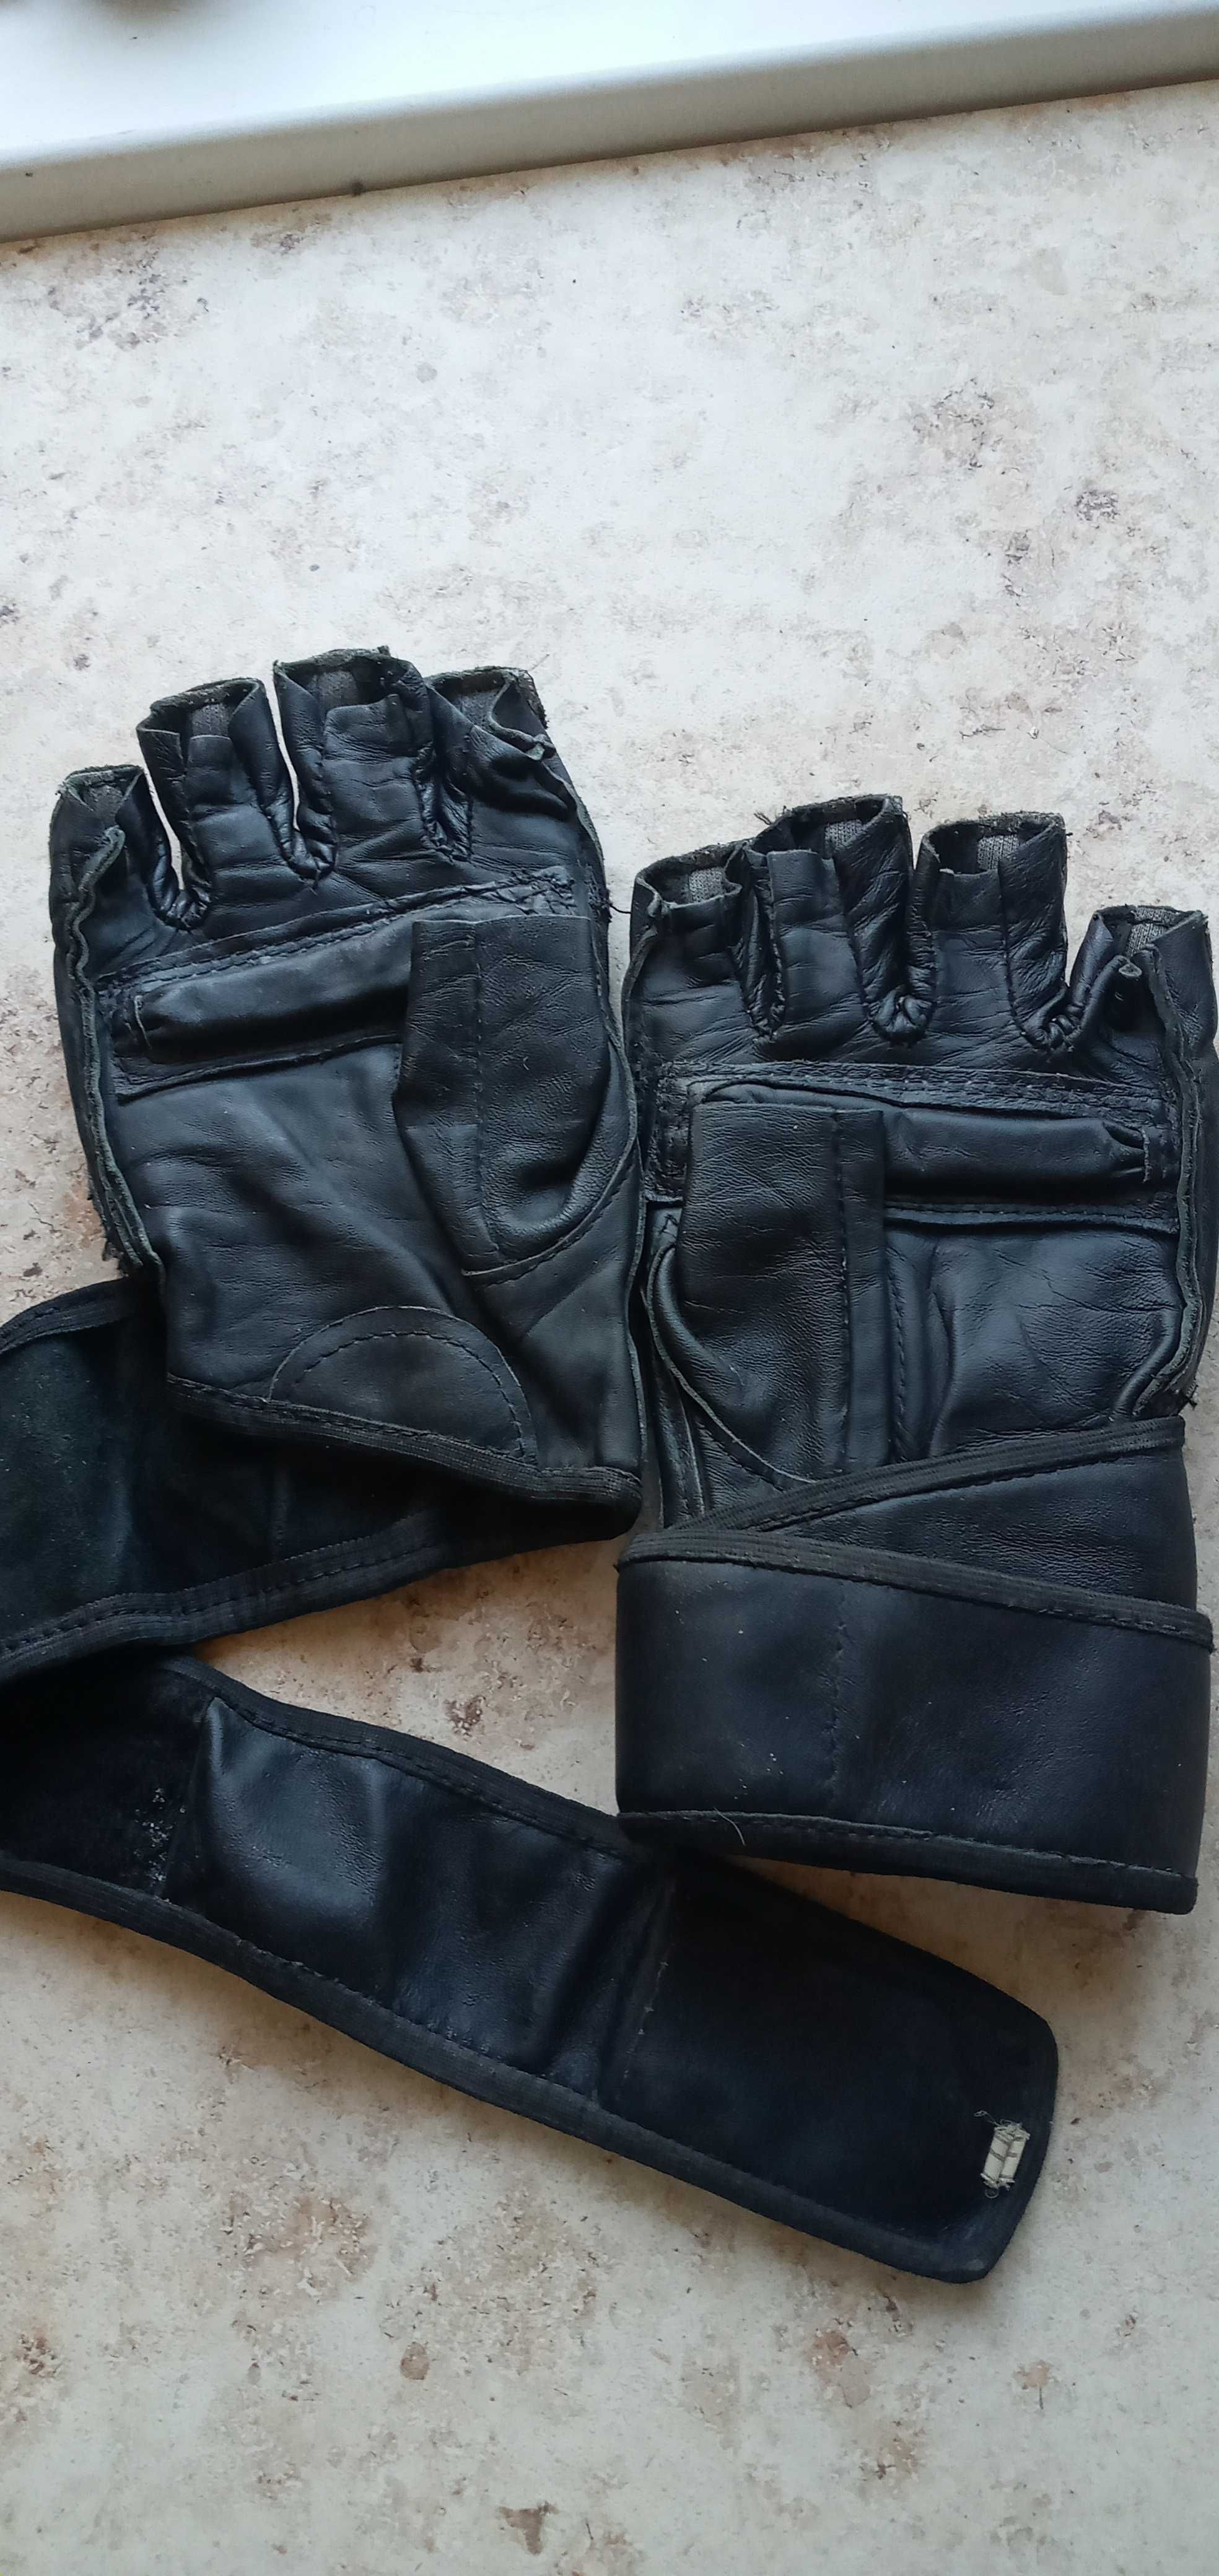 Перчатки и защита для единоборств Everlast кожа размер L